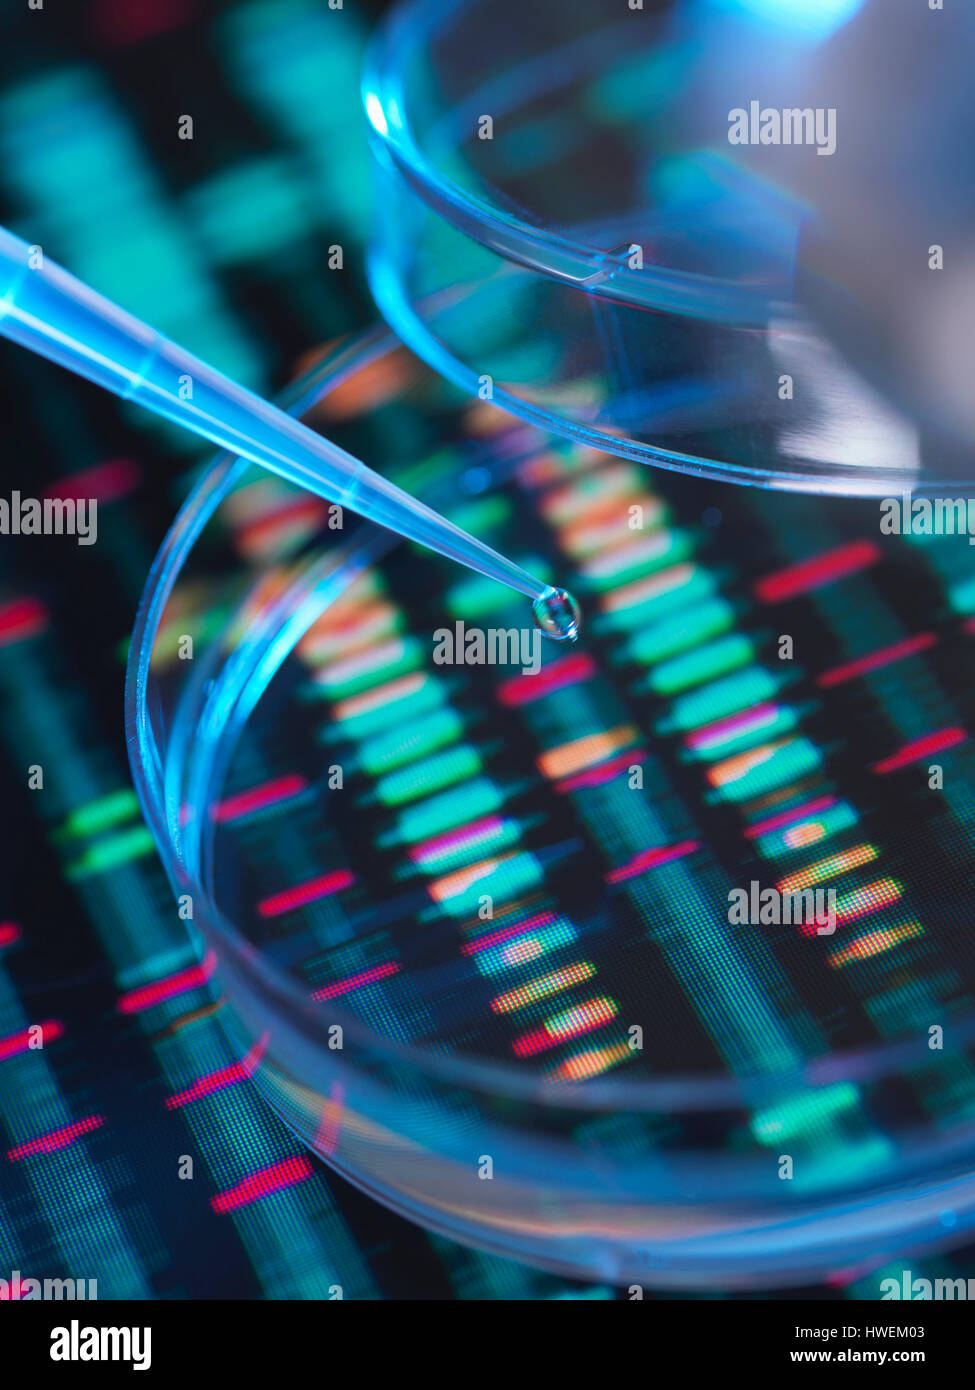 La recherche génétique, un des droits de l'échantillon à la pipette dans une boîte de Petri pour l'analyse génétique assis sur une séquence d'ADN Banque D'Images